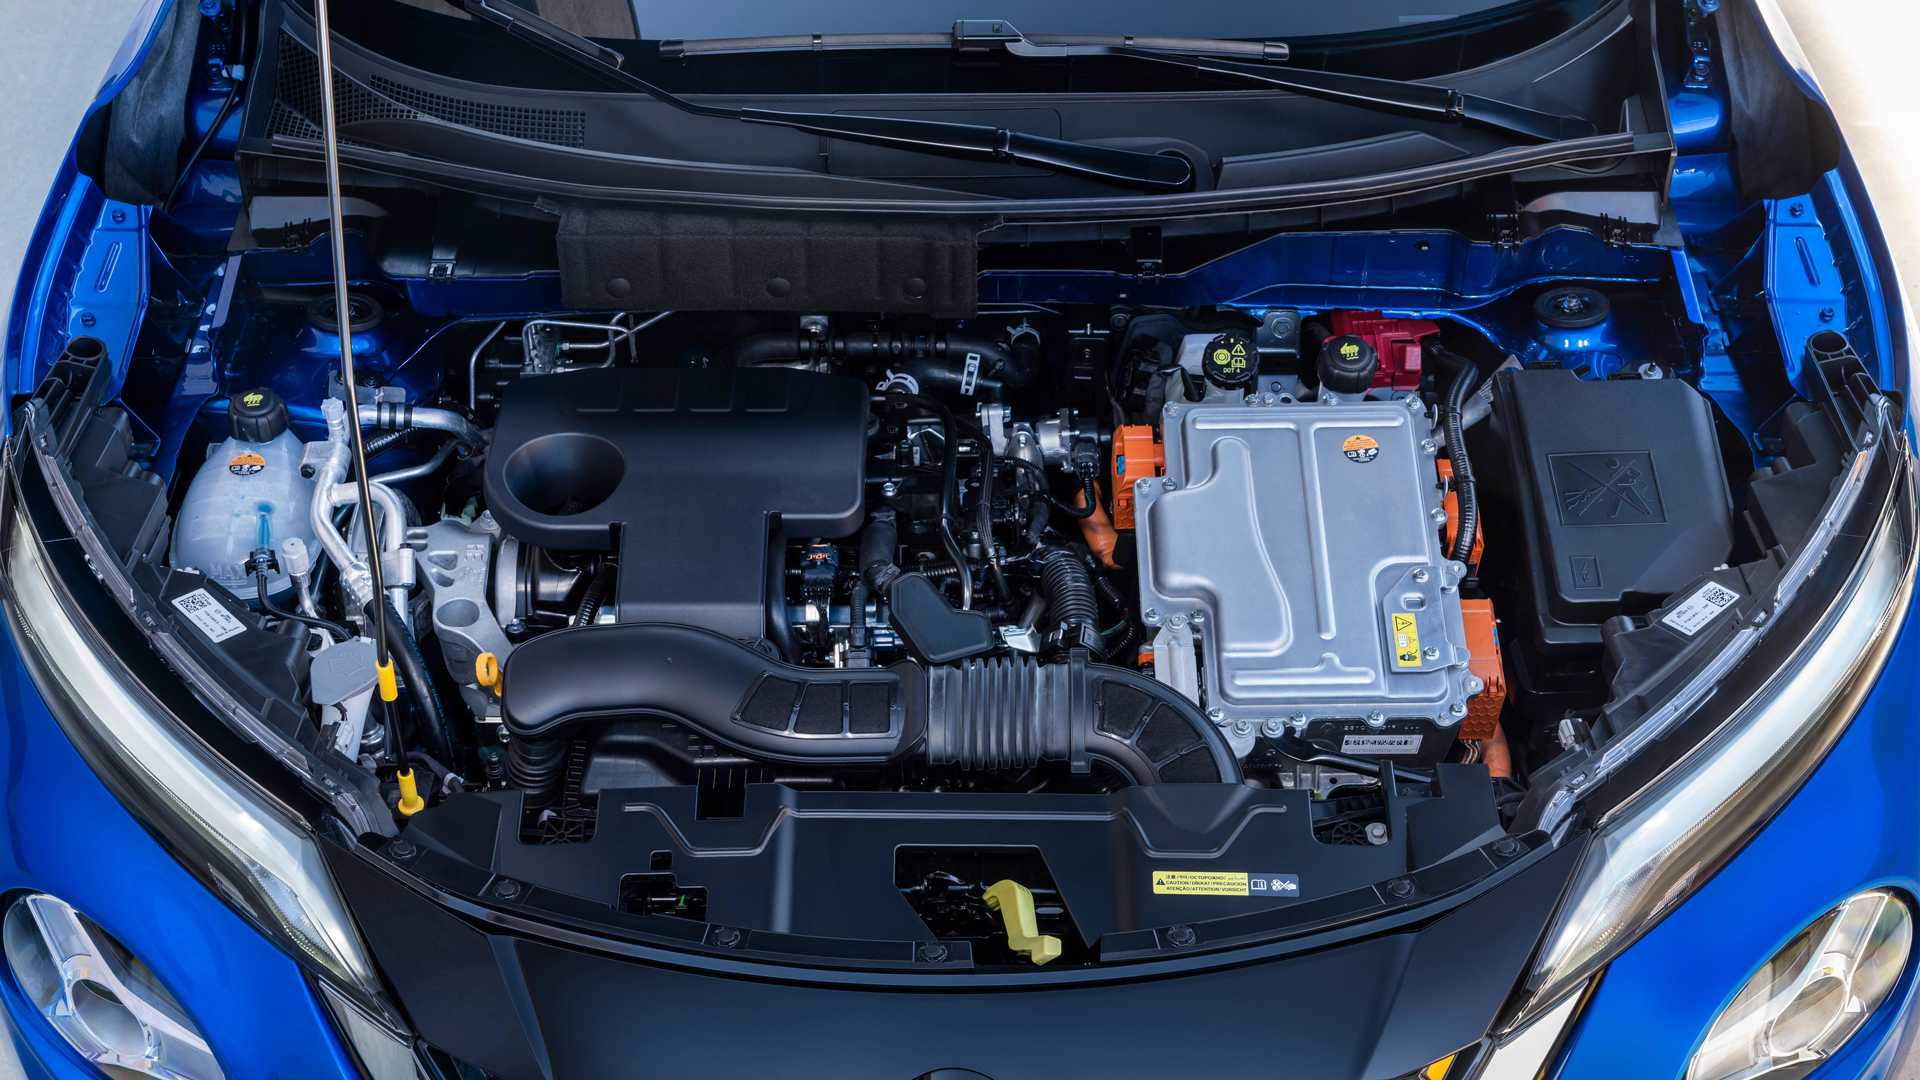 Nissan Juke w wersji Hybrid debiutuje - ekologia i ciekawe rozwiązania